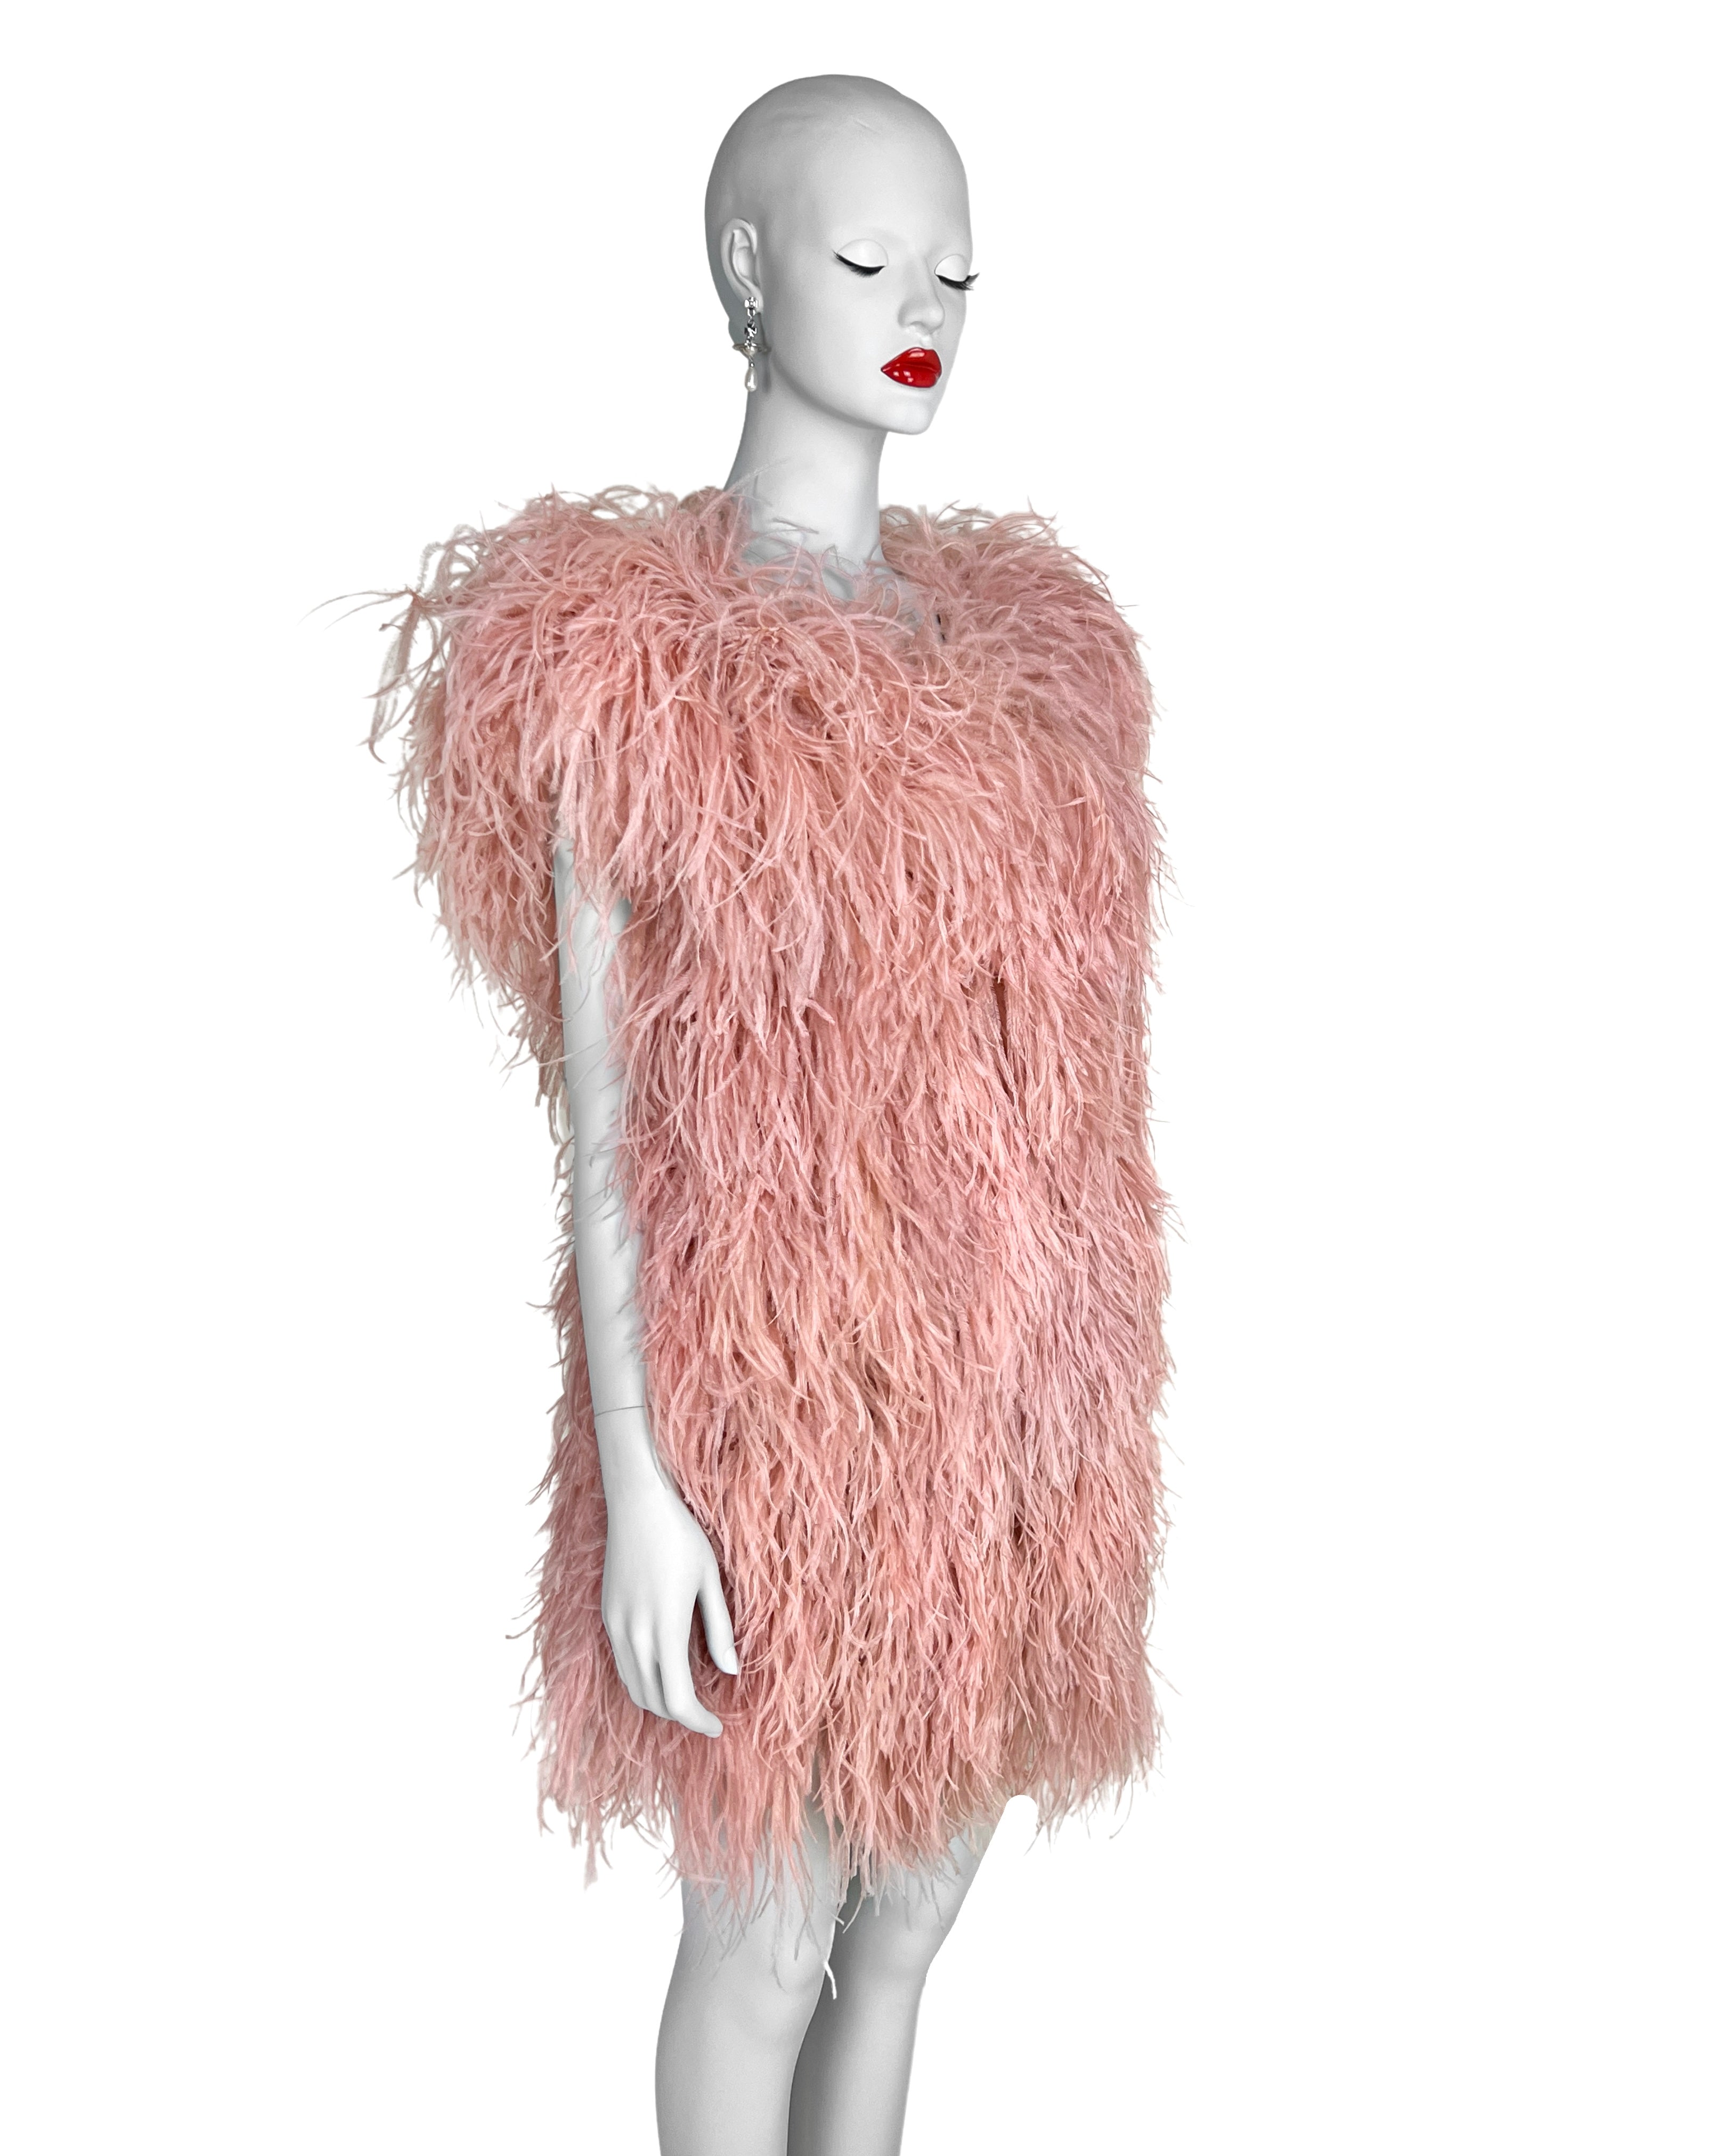 Sonia Rykiel Fall 2010 Ostrich Feather Dress